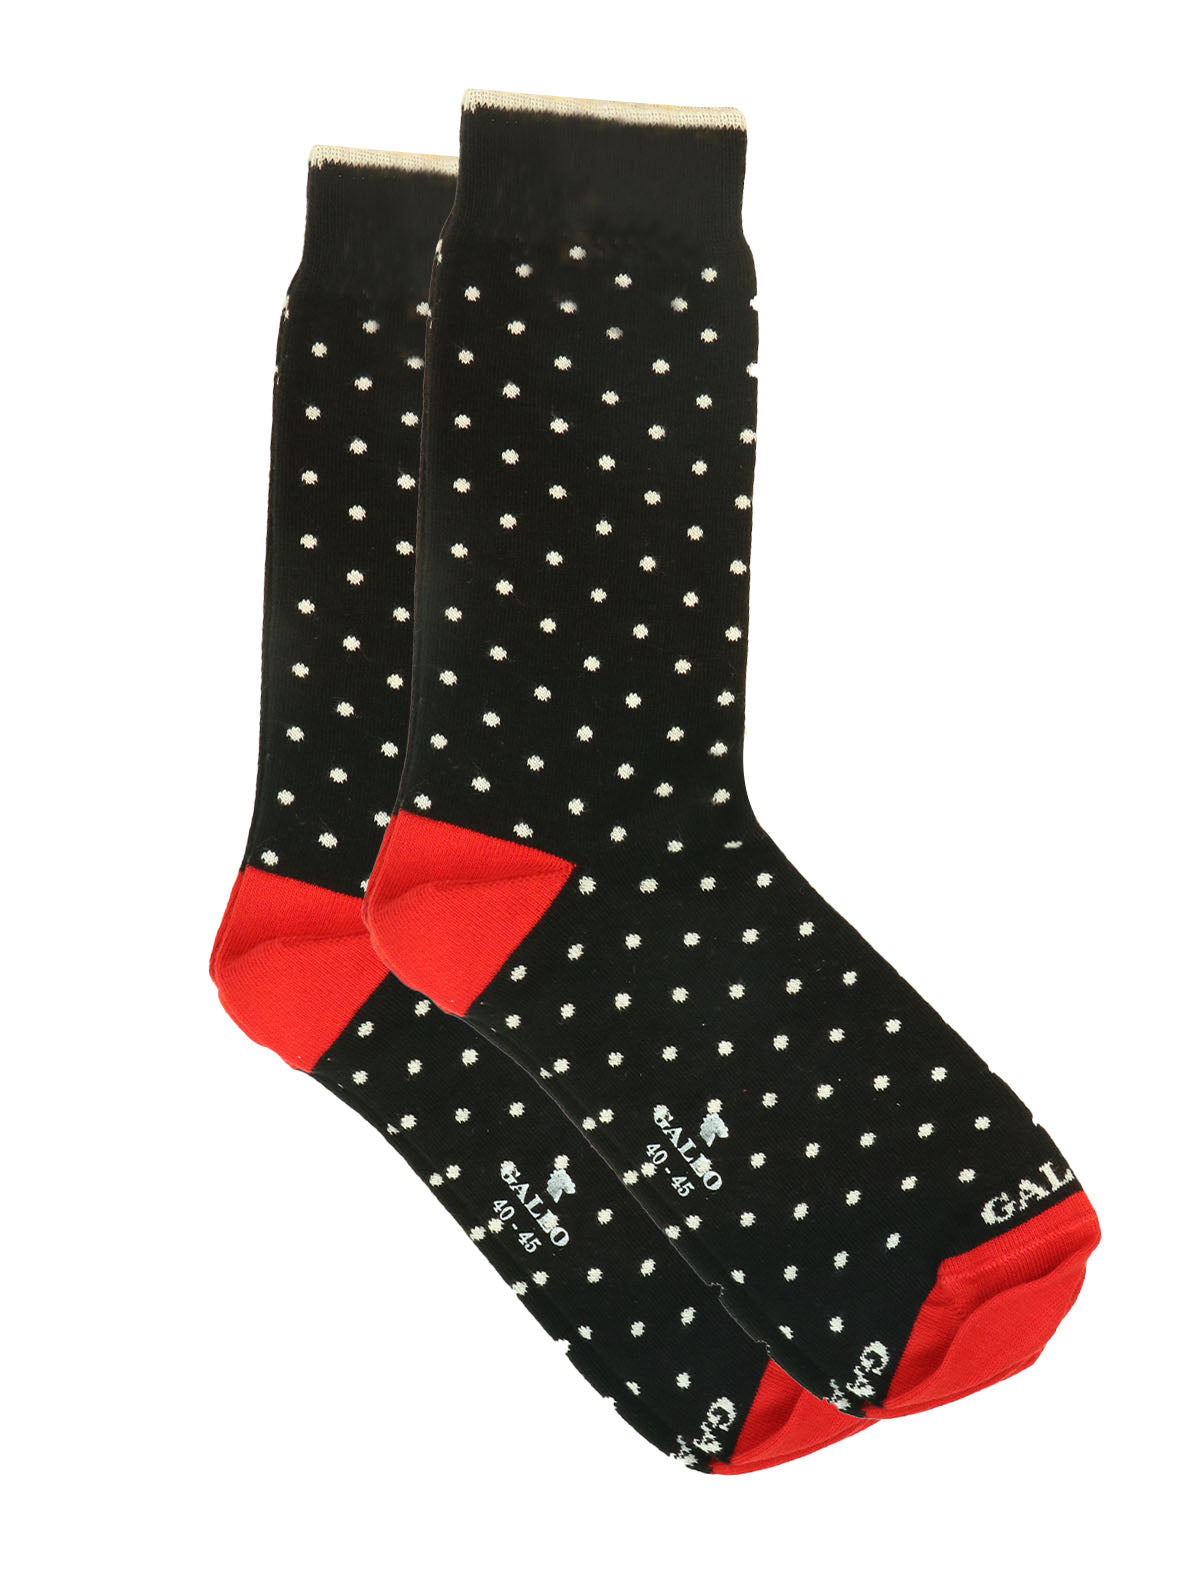 Gallo Socks in Black w/ White Polka Dots